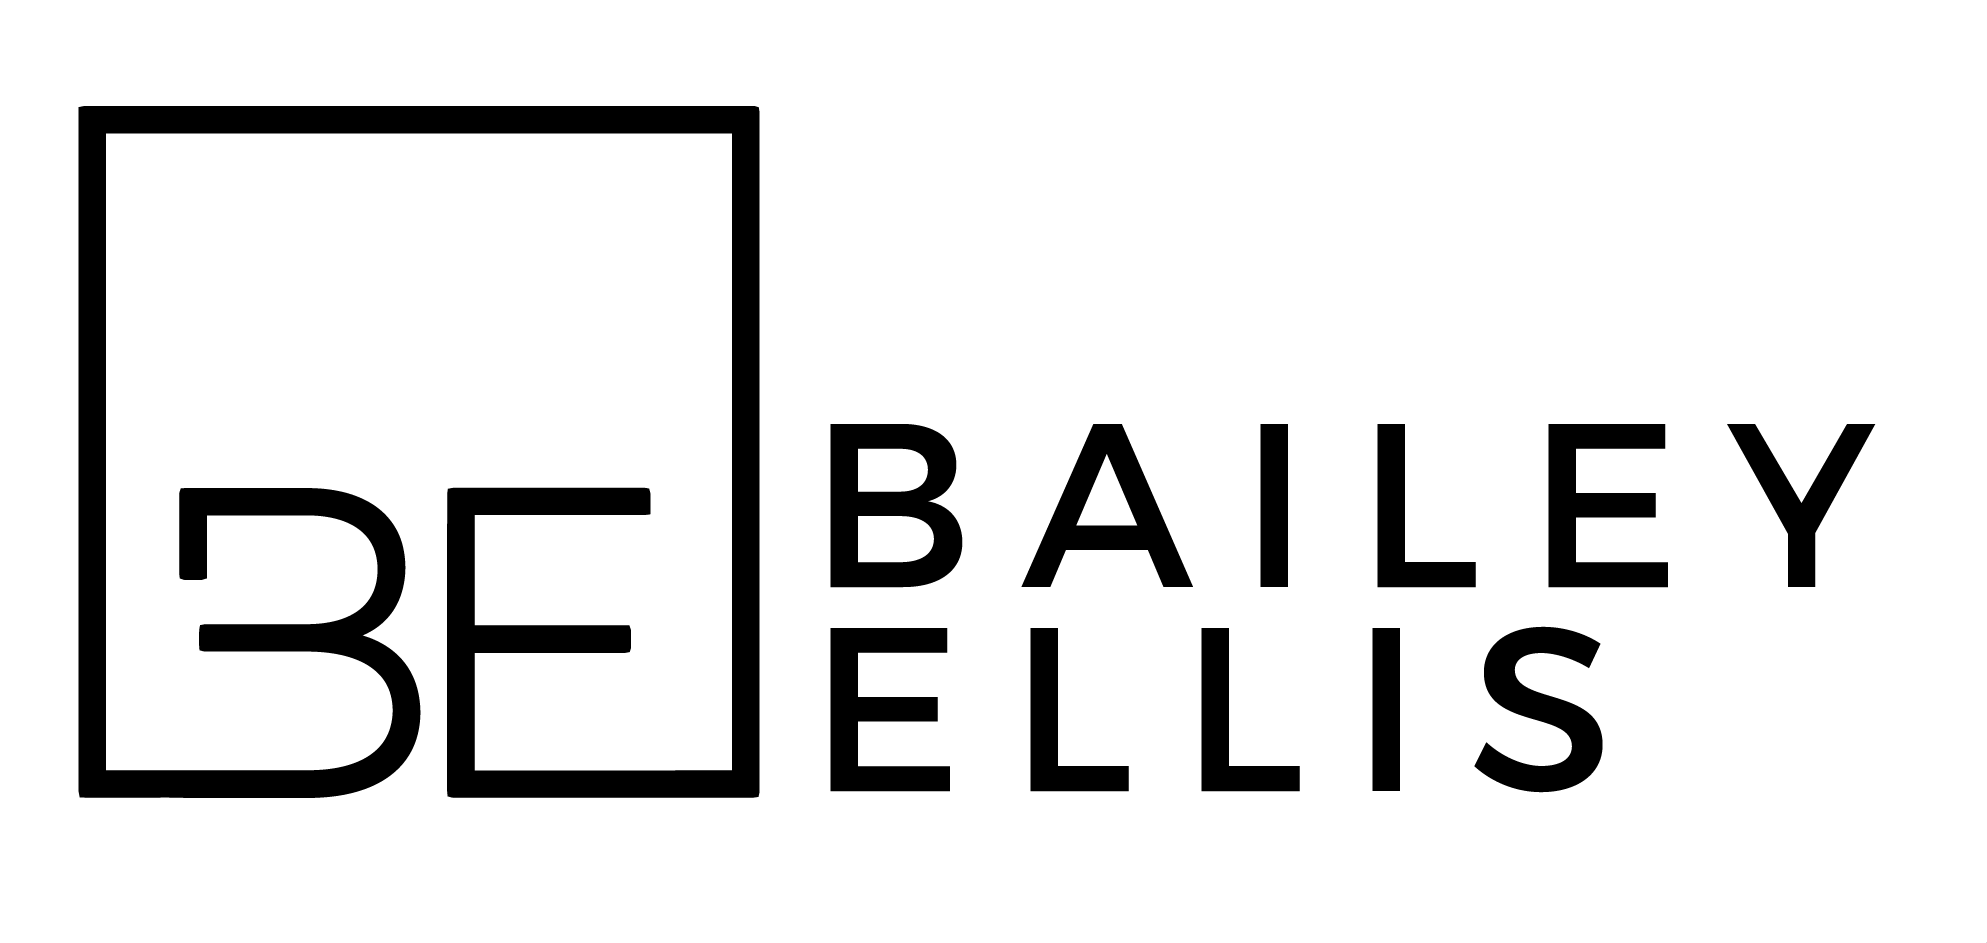 Bailey Ellis